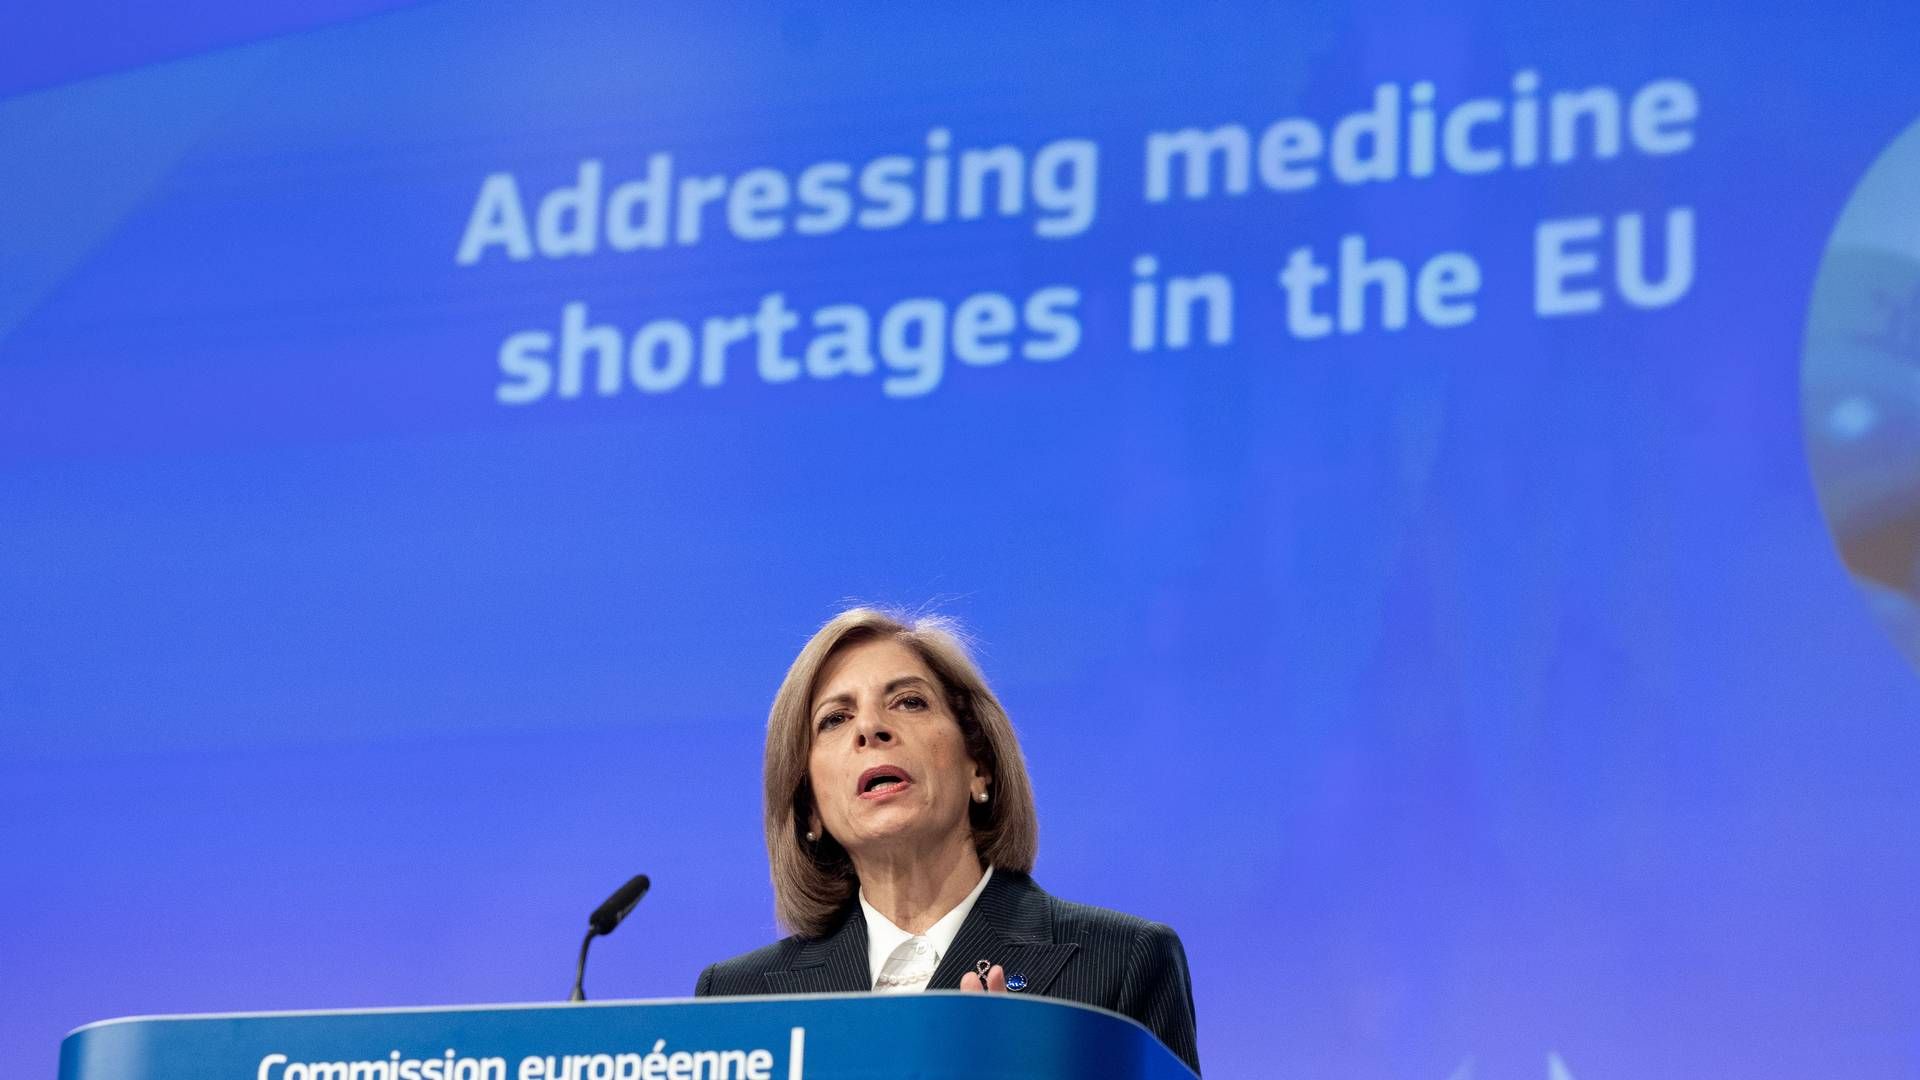 VIL UTSETTE INNFØRING: Forslaget vil være en lettelse for sektoren, uten at det går ut over pasientsikkerheten og pasientbehandlingen, sier EUs helsekommissær Stella Kyriakides. | Foto: European Union / Europa-kommissionen